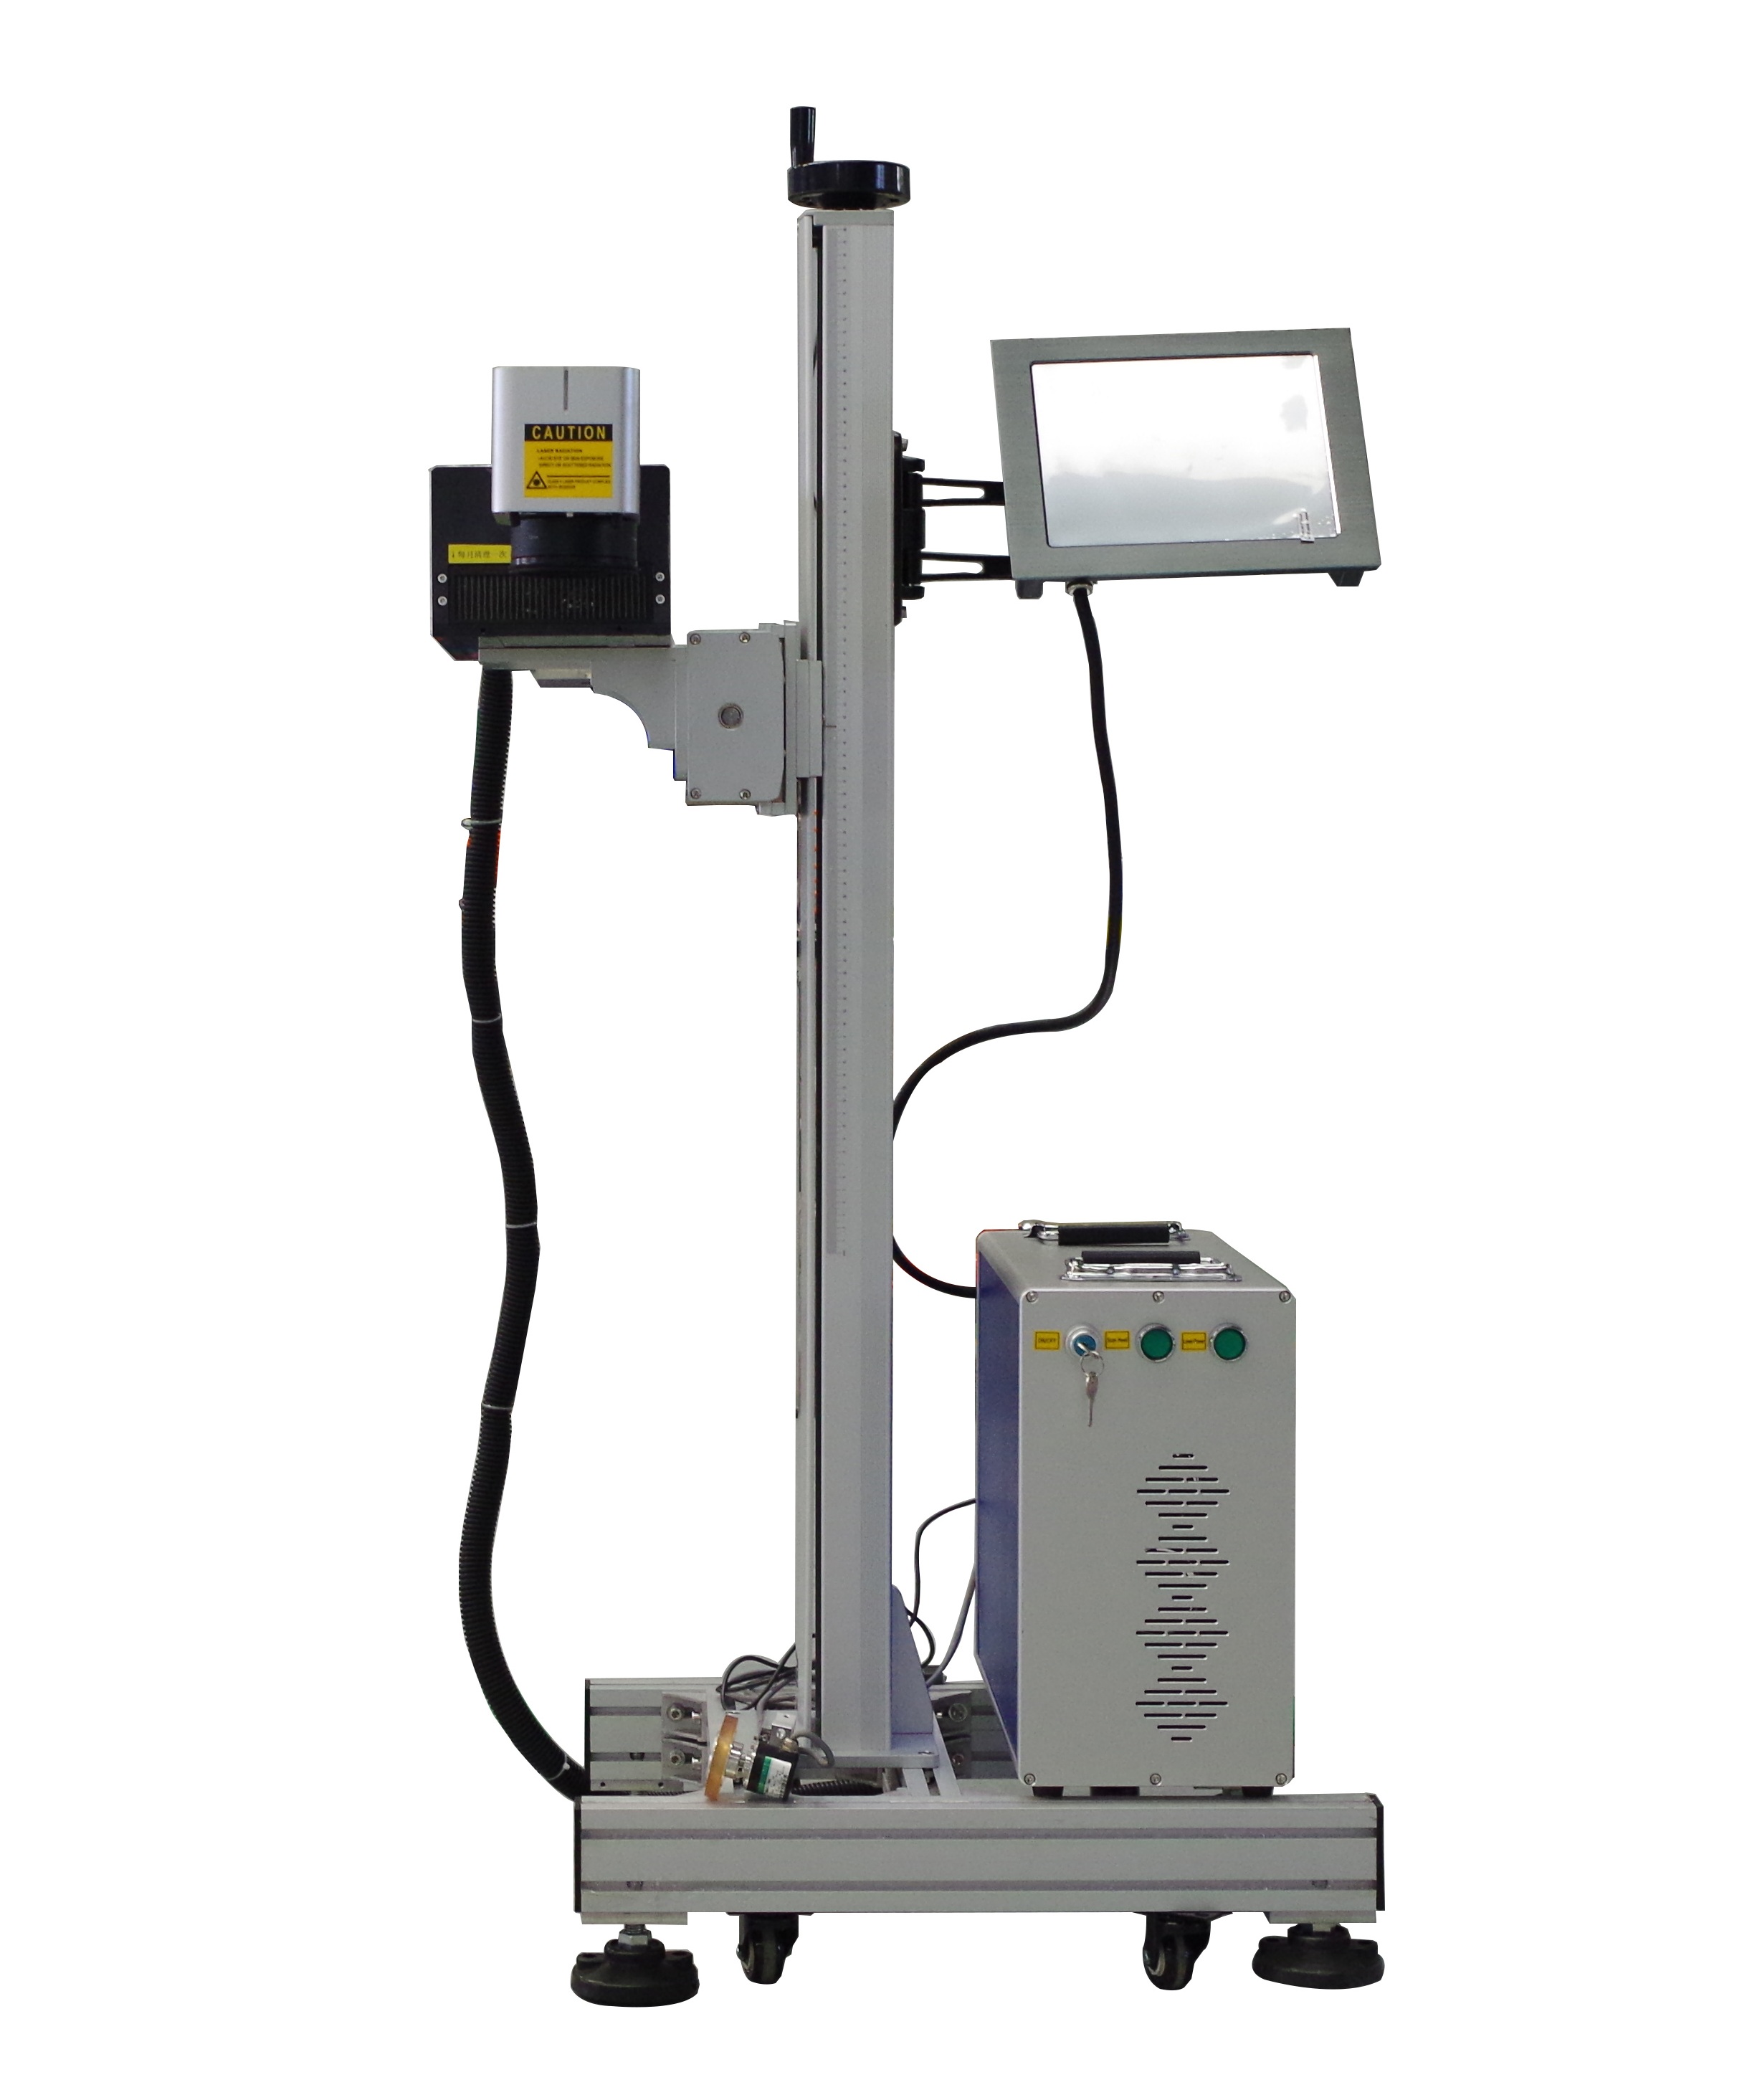 آلة الوسم بالليزر بالأشعة فوق البنفسجية 3 وات/5 وات مع نظام تغذية تلقائي للأجزاء الصغيرة جدًا والزجاجات الزجاجية ووضع العلامات البلاستيكية